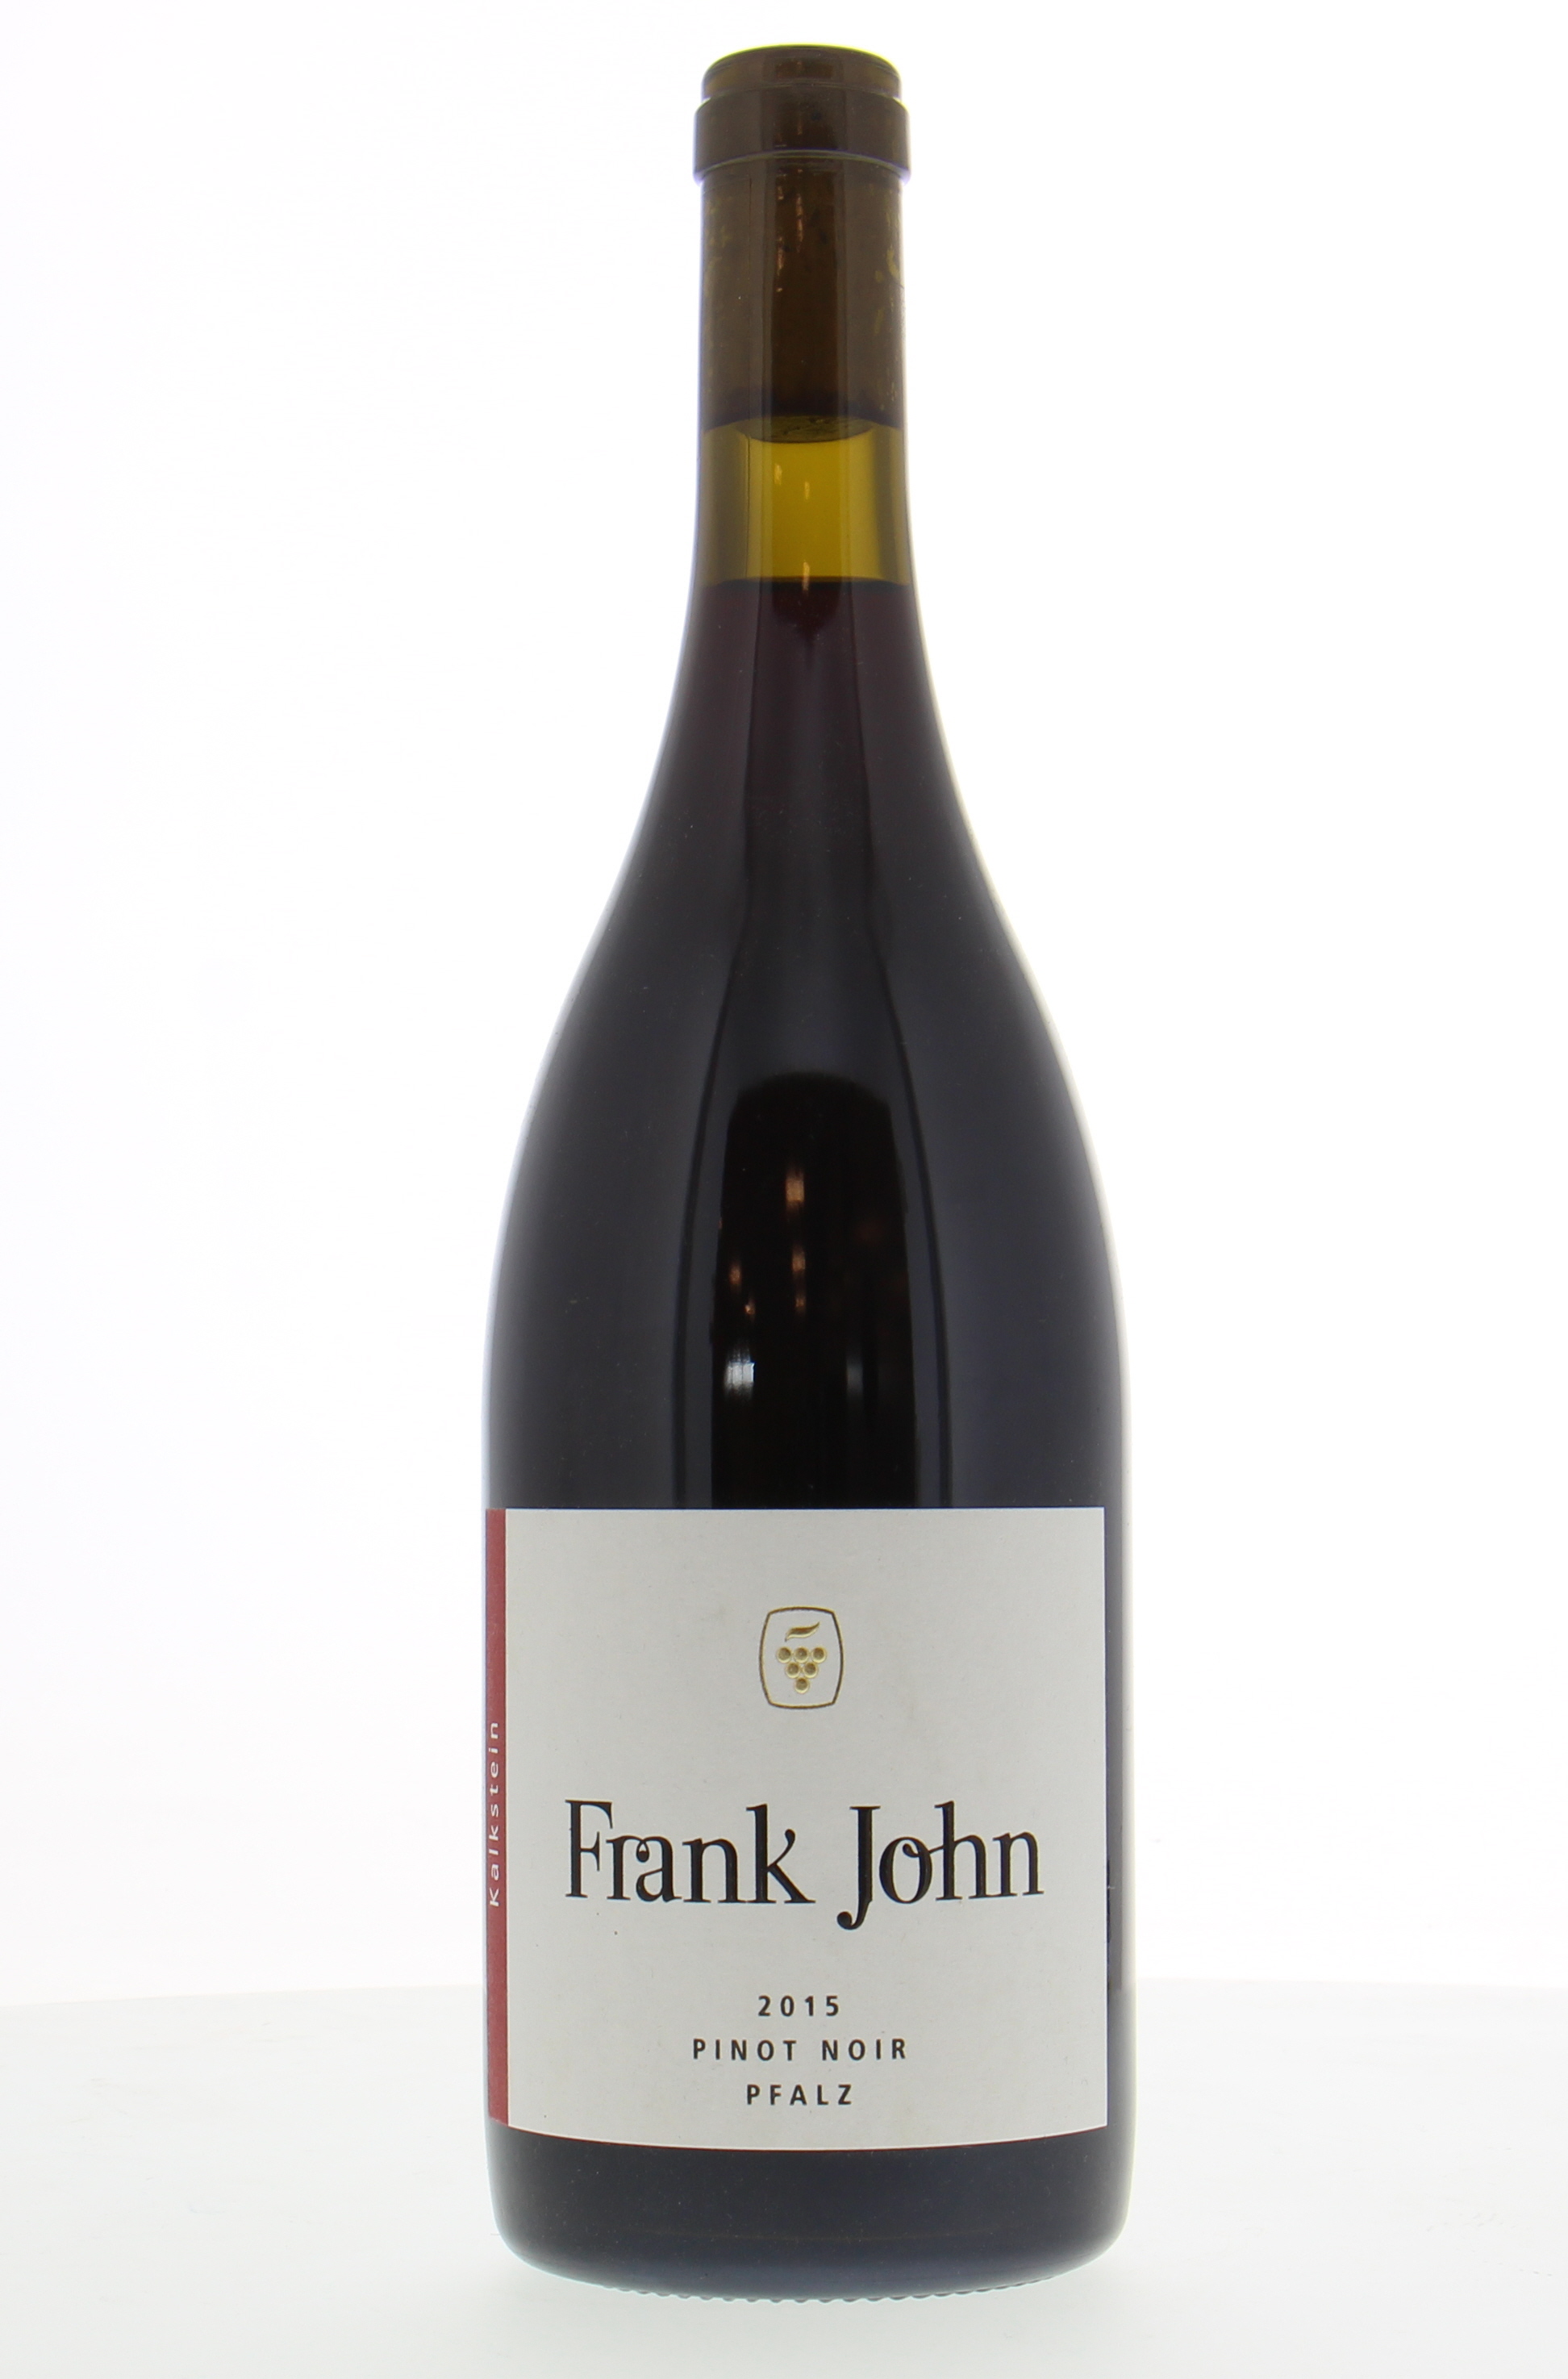 Frank John - Pinot Noir Kalkstein 2015 Perfect